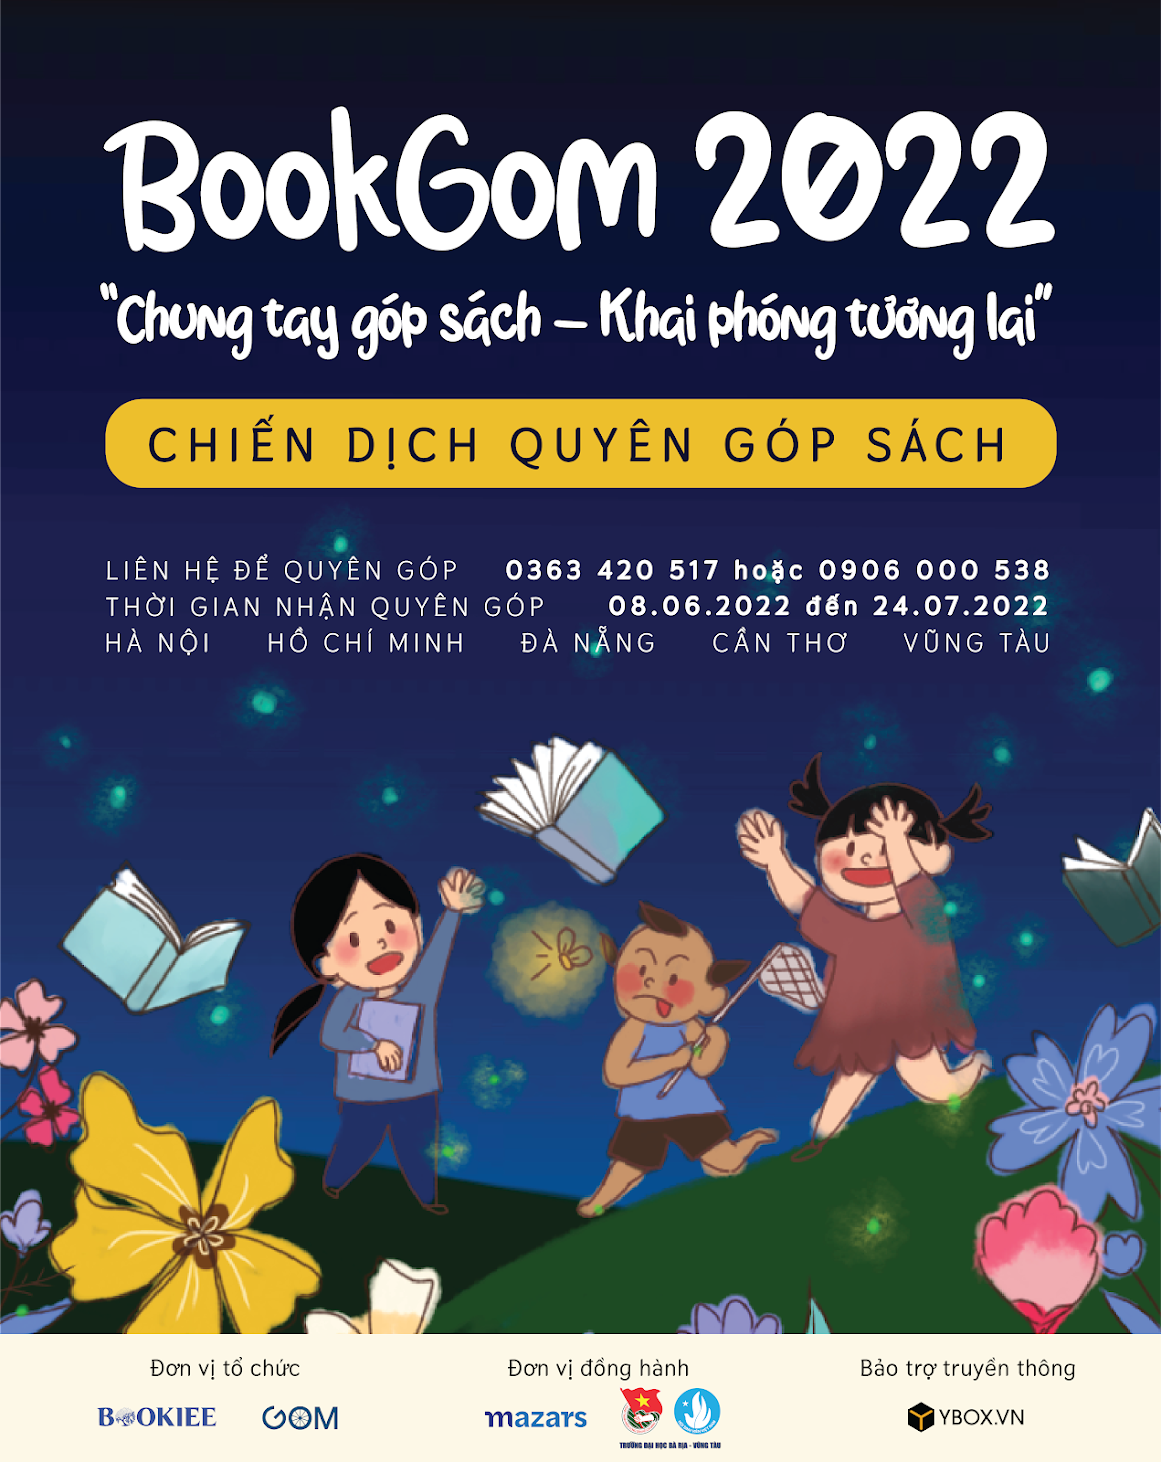 Phát động Chiến dịch quyên góp sách BookGom 2022 tới các em nhỏ khó khăn